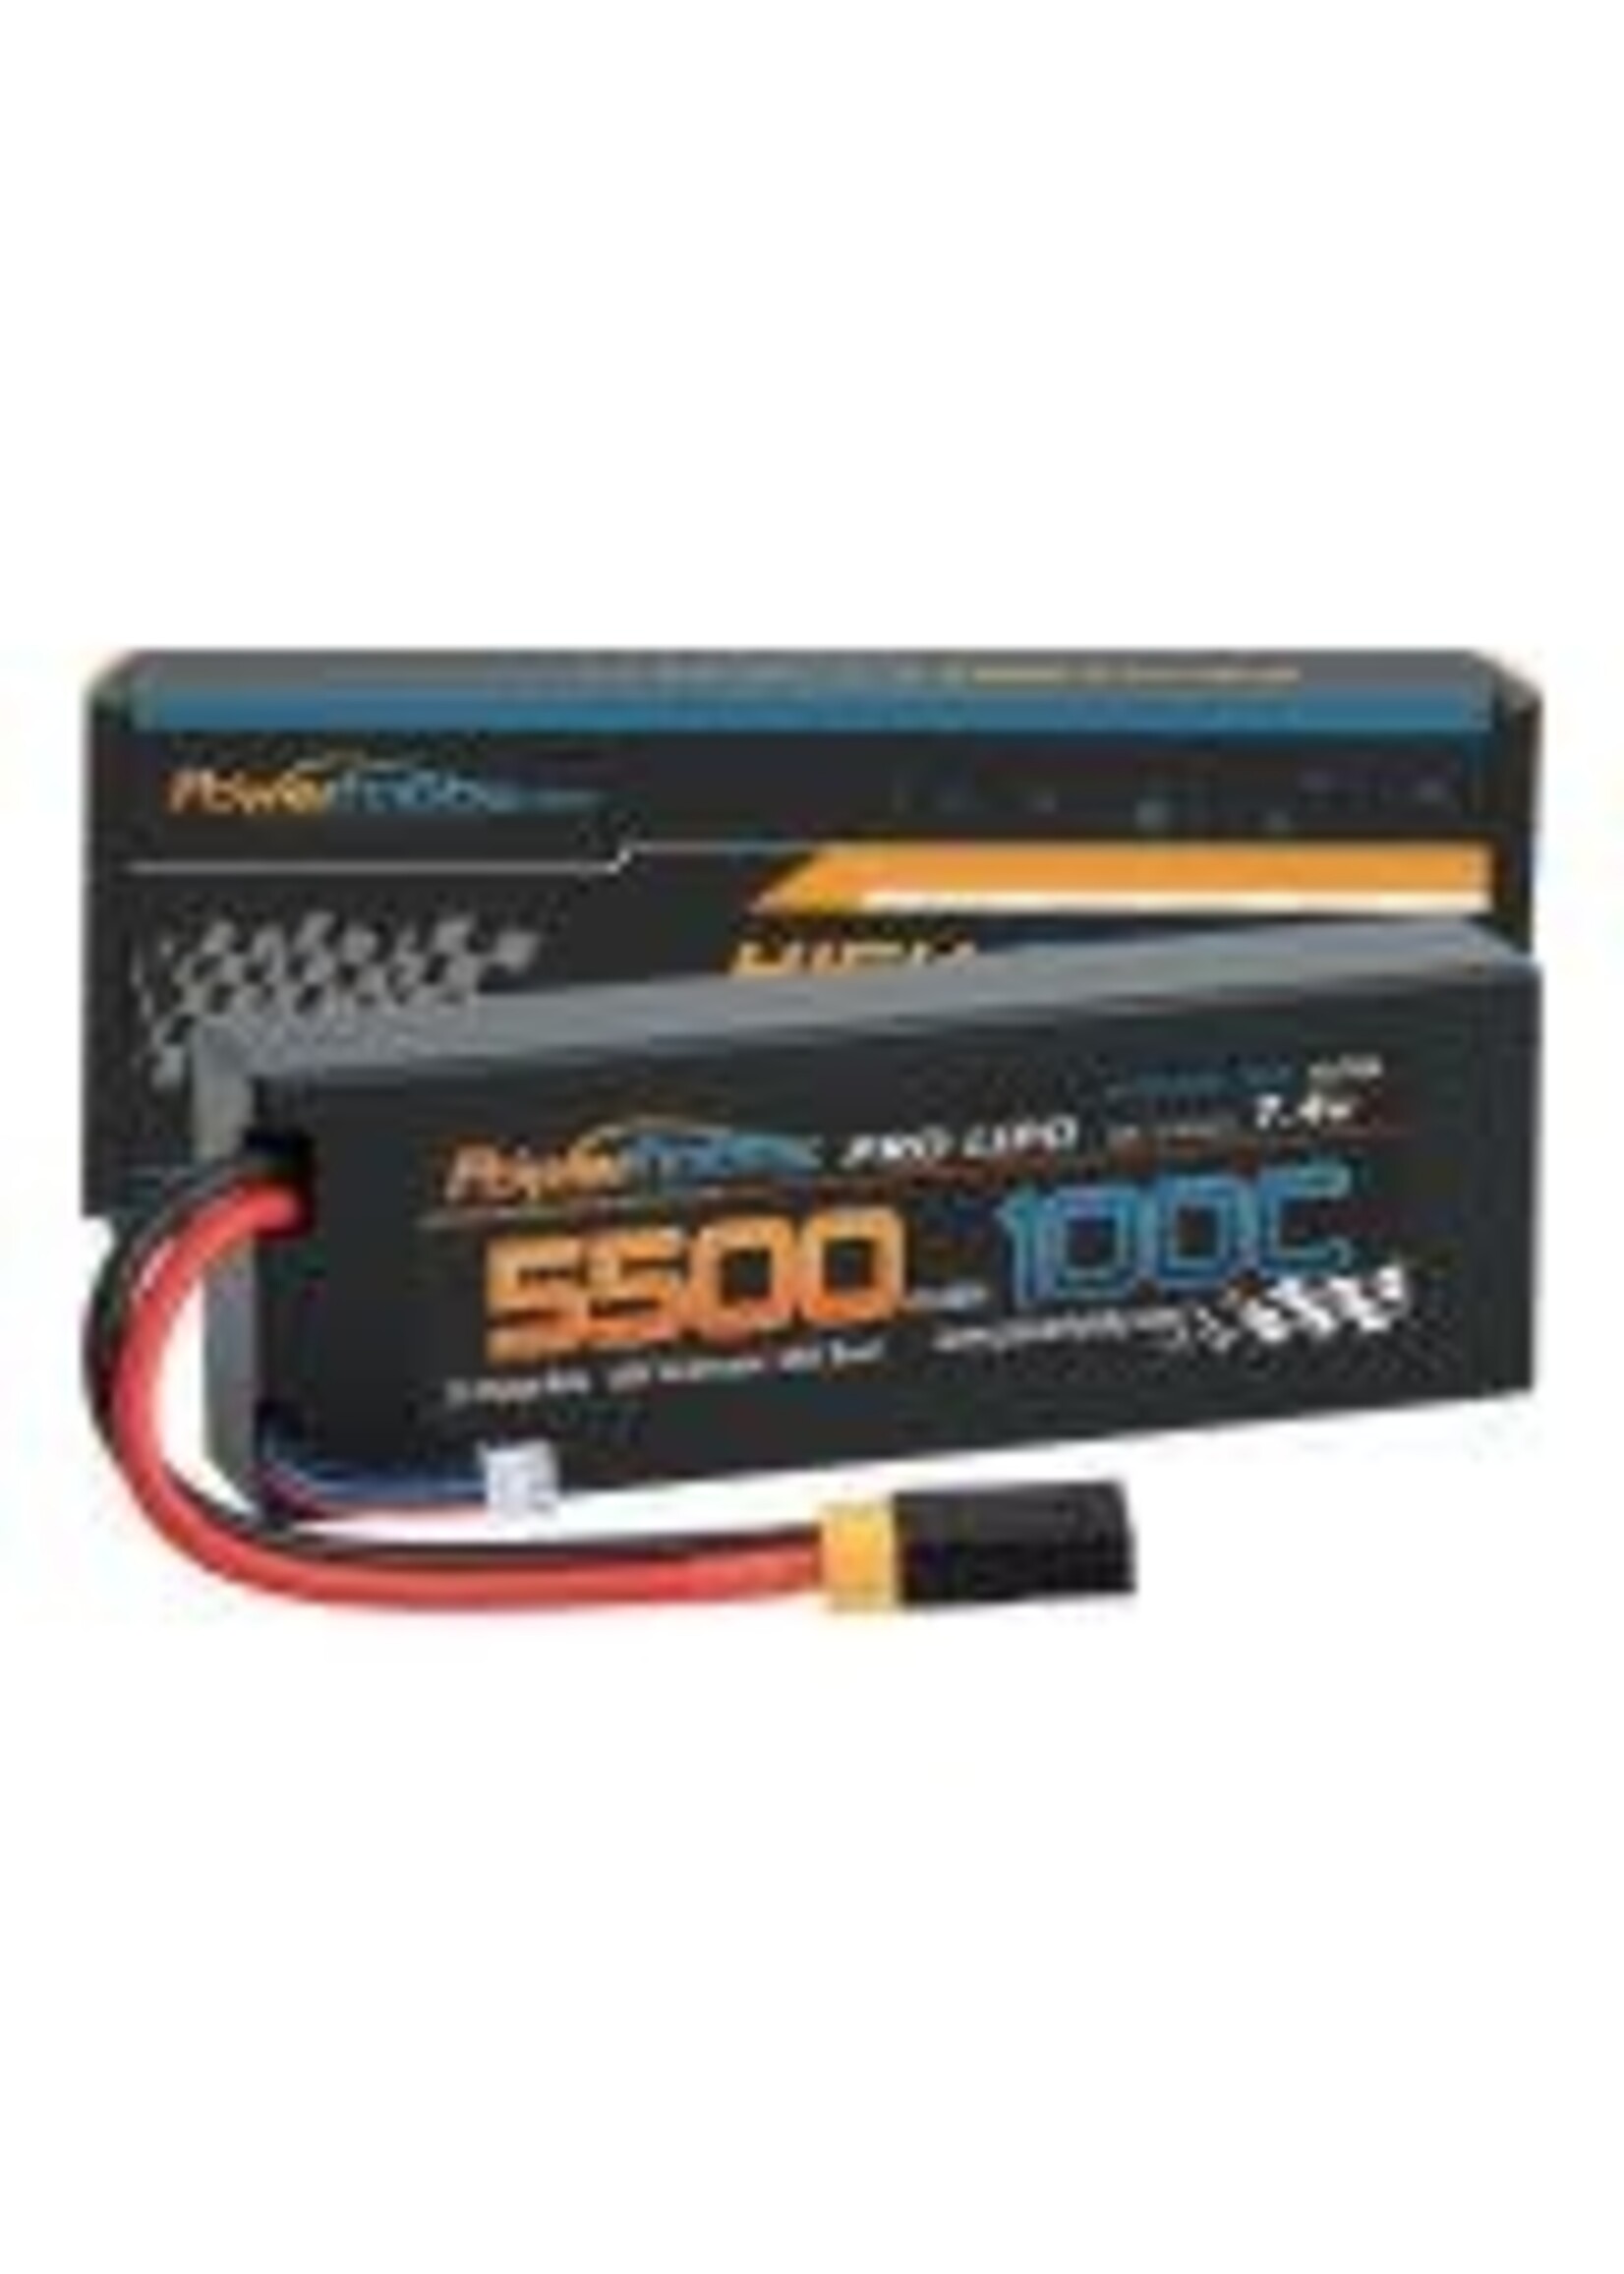 Power Hobby Powerhobby 2S 7.4V 5500MAH 100C Lipo Battery w XT60 + Adapter